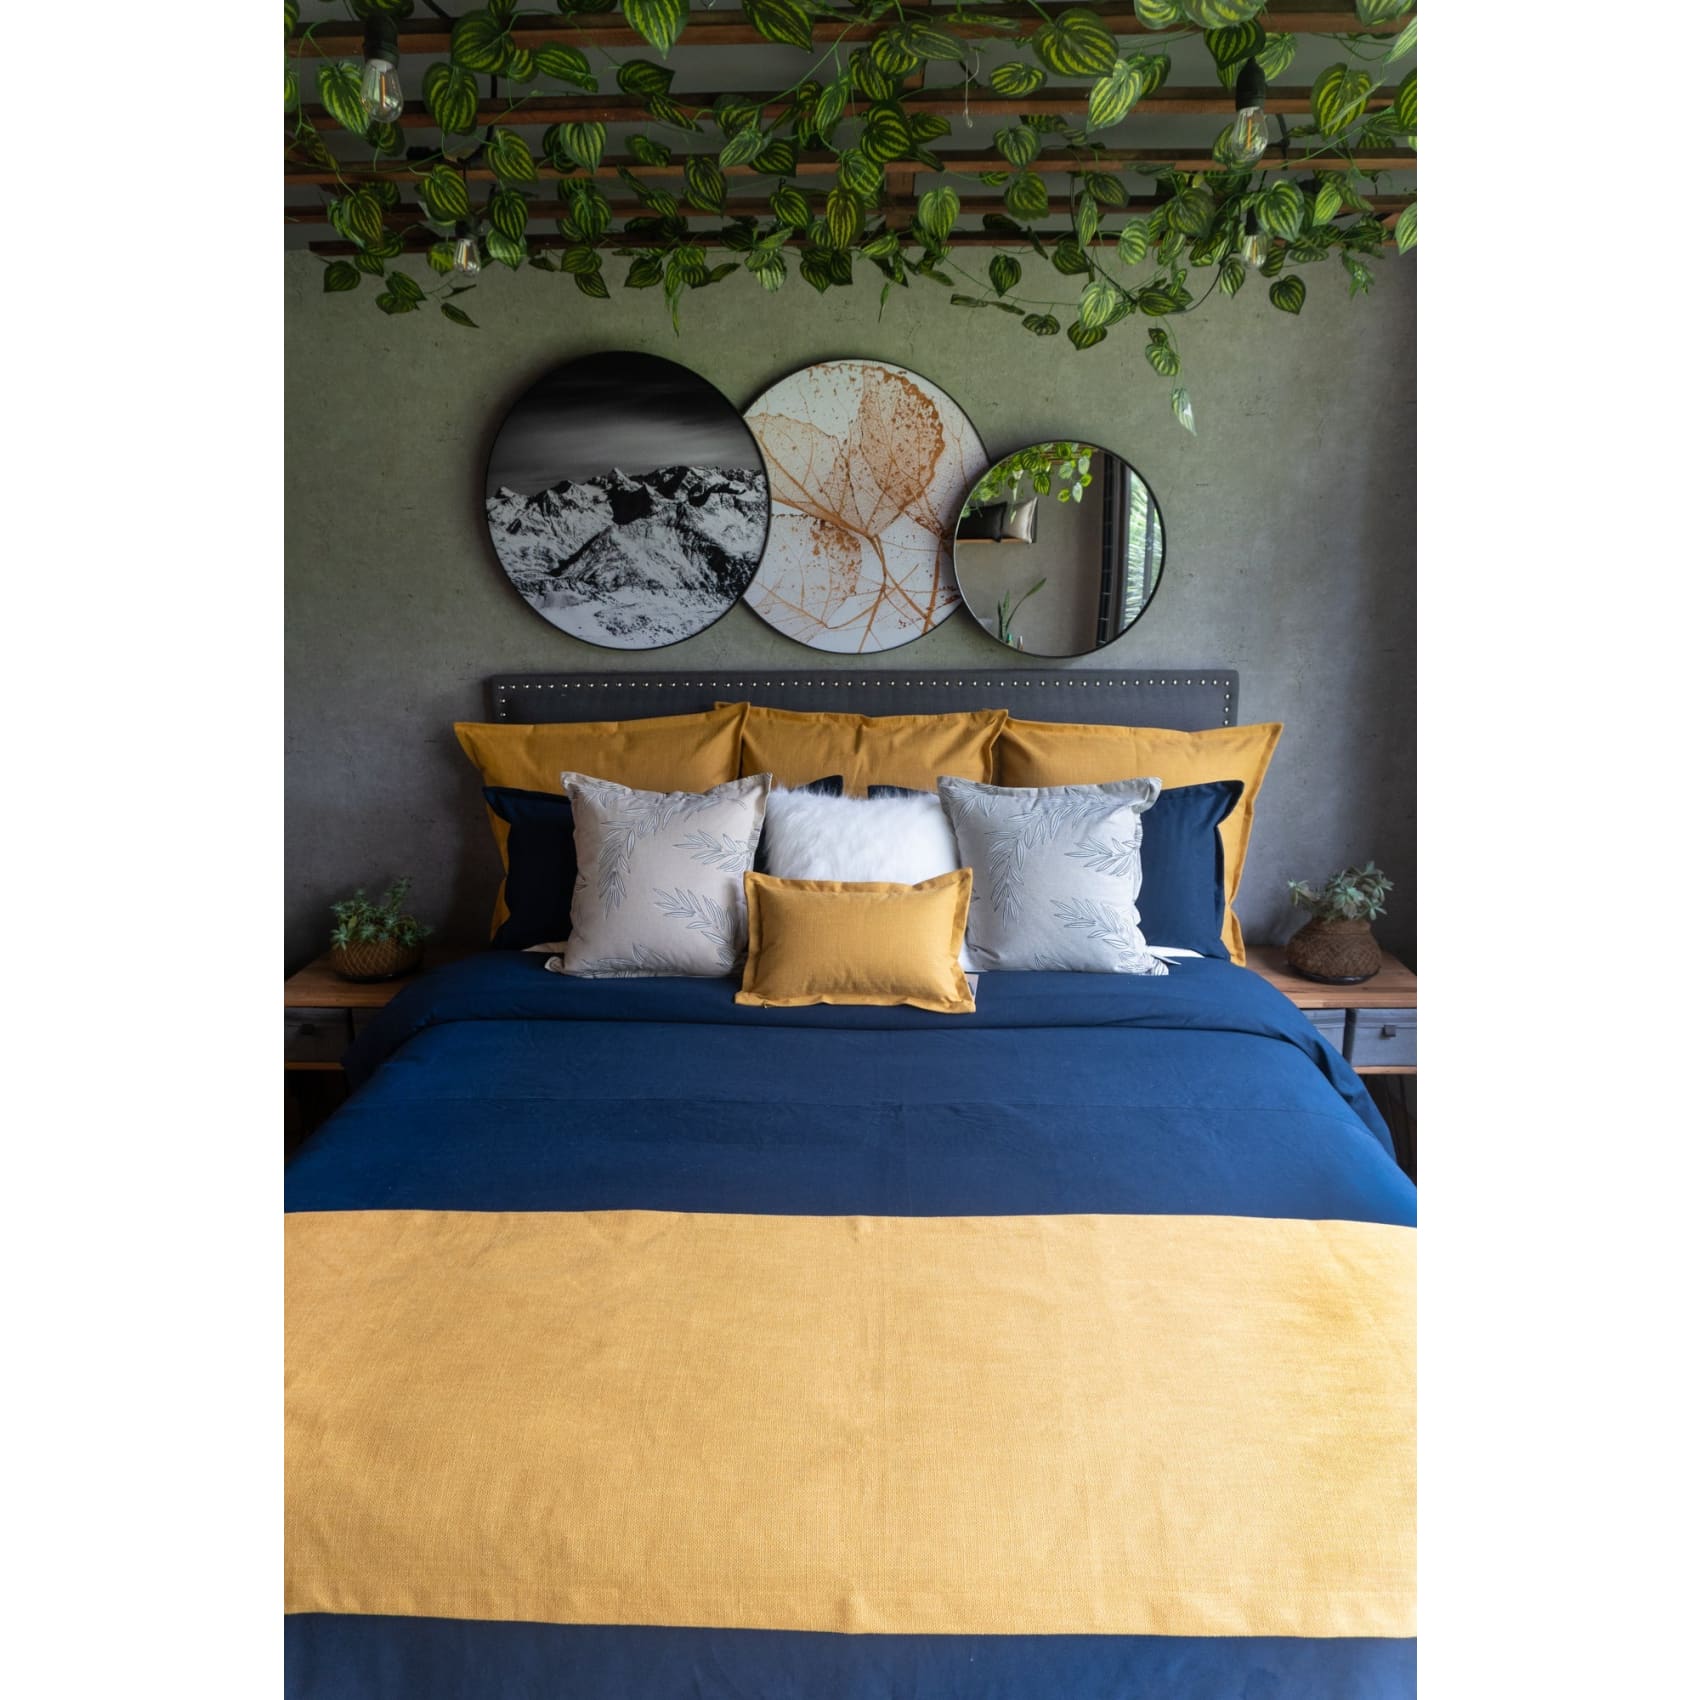 Set Duvet Marsella Navy, decorativo, plumón, cama, habitación, acolchado, edredon, duvet